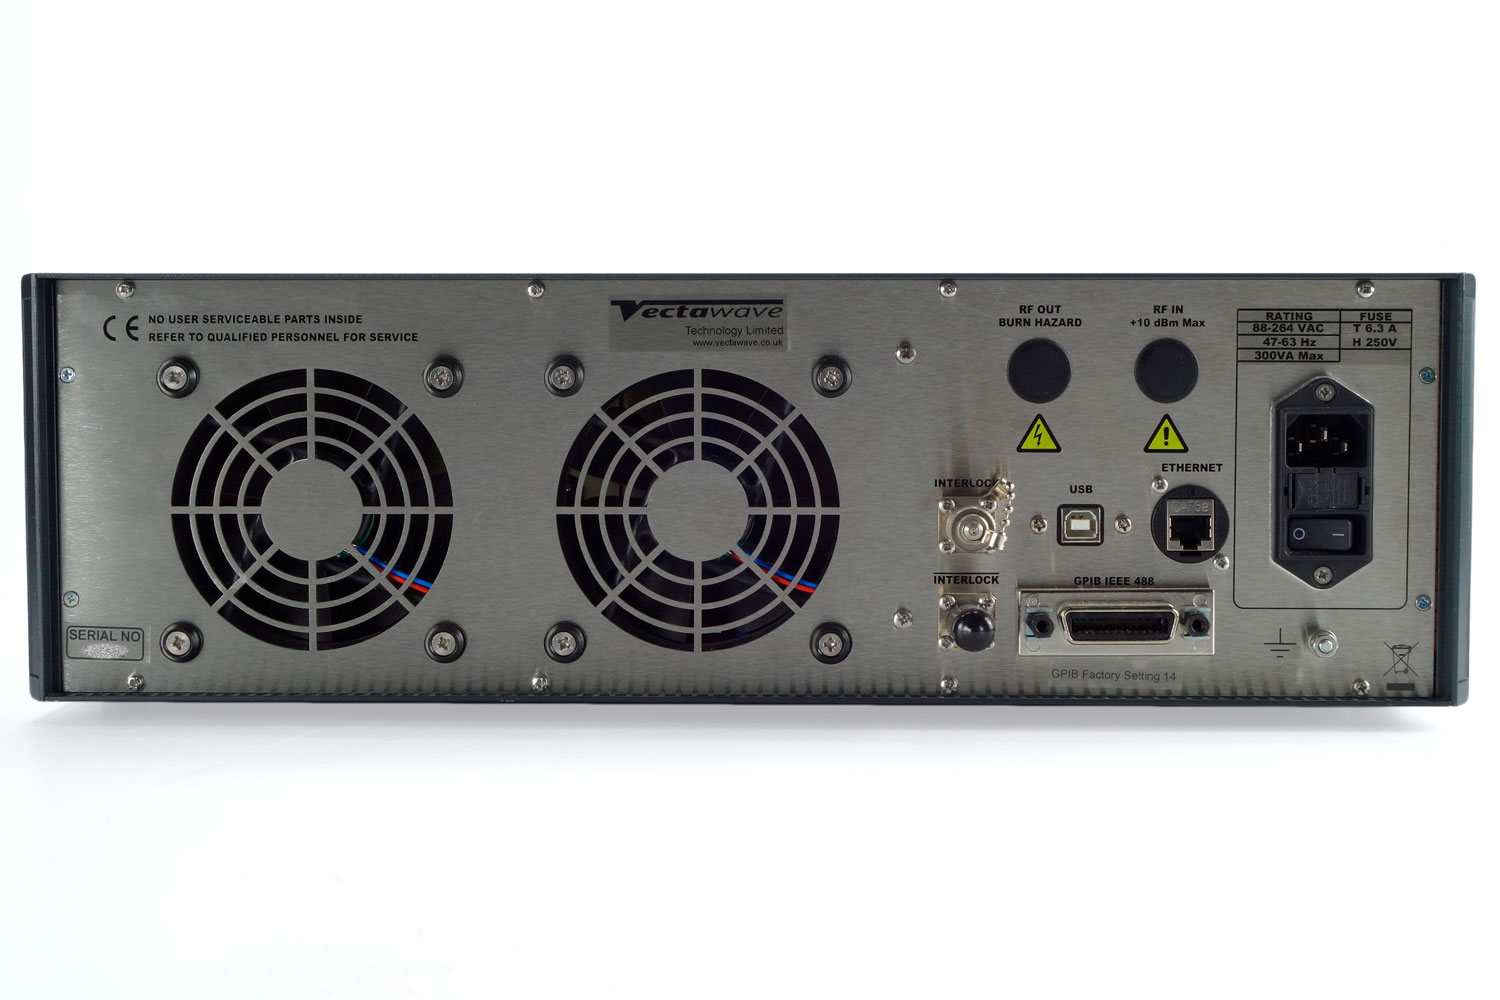 Усилитель мощности Vectawave VBA 230-80
 с диапазоном от 150 кГц до 230 МГц
 
 
 
 

 Стоимость указана в Рублях DDP Москва по безналичному расчету включая НДС 20%
